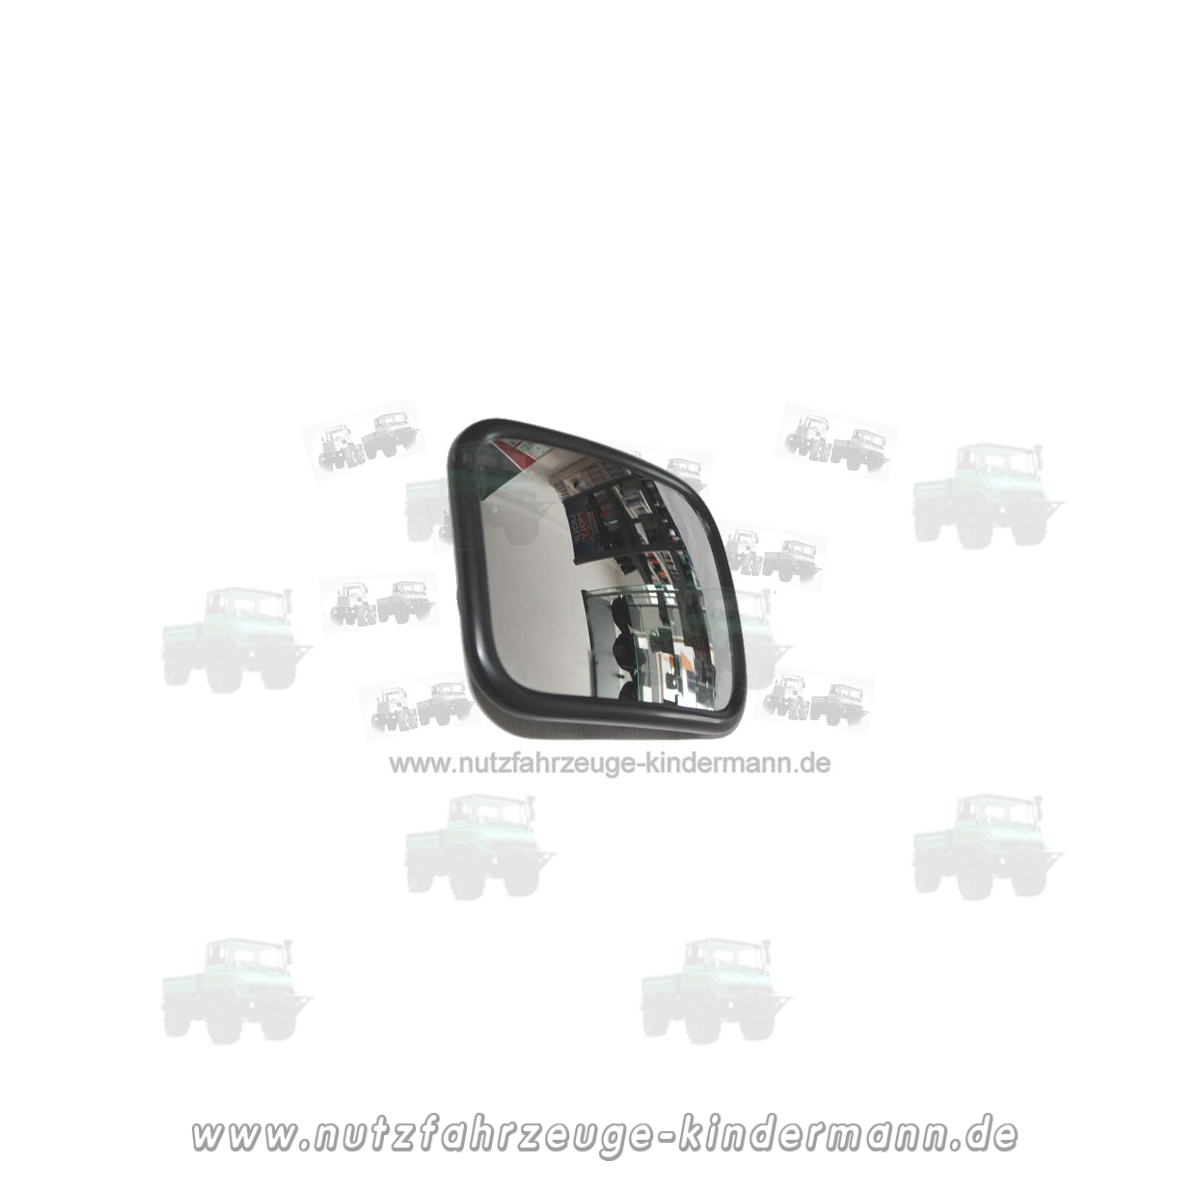 Unimog wide angle mirror heated, 24 V - Nutzfahrzeuge Kindermann, 99,00 €